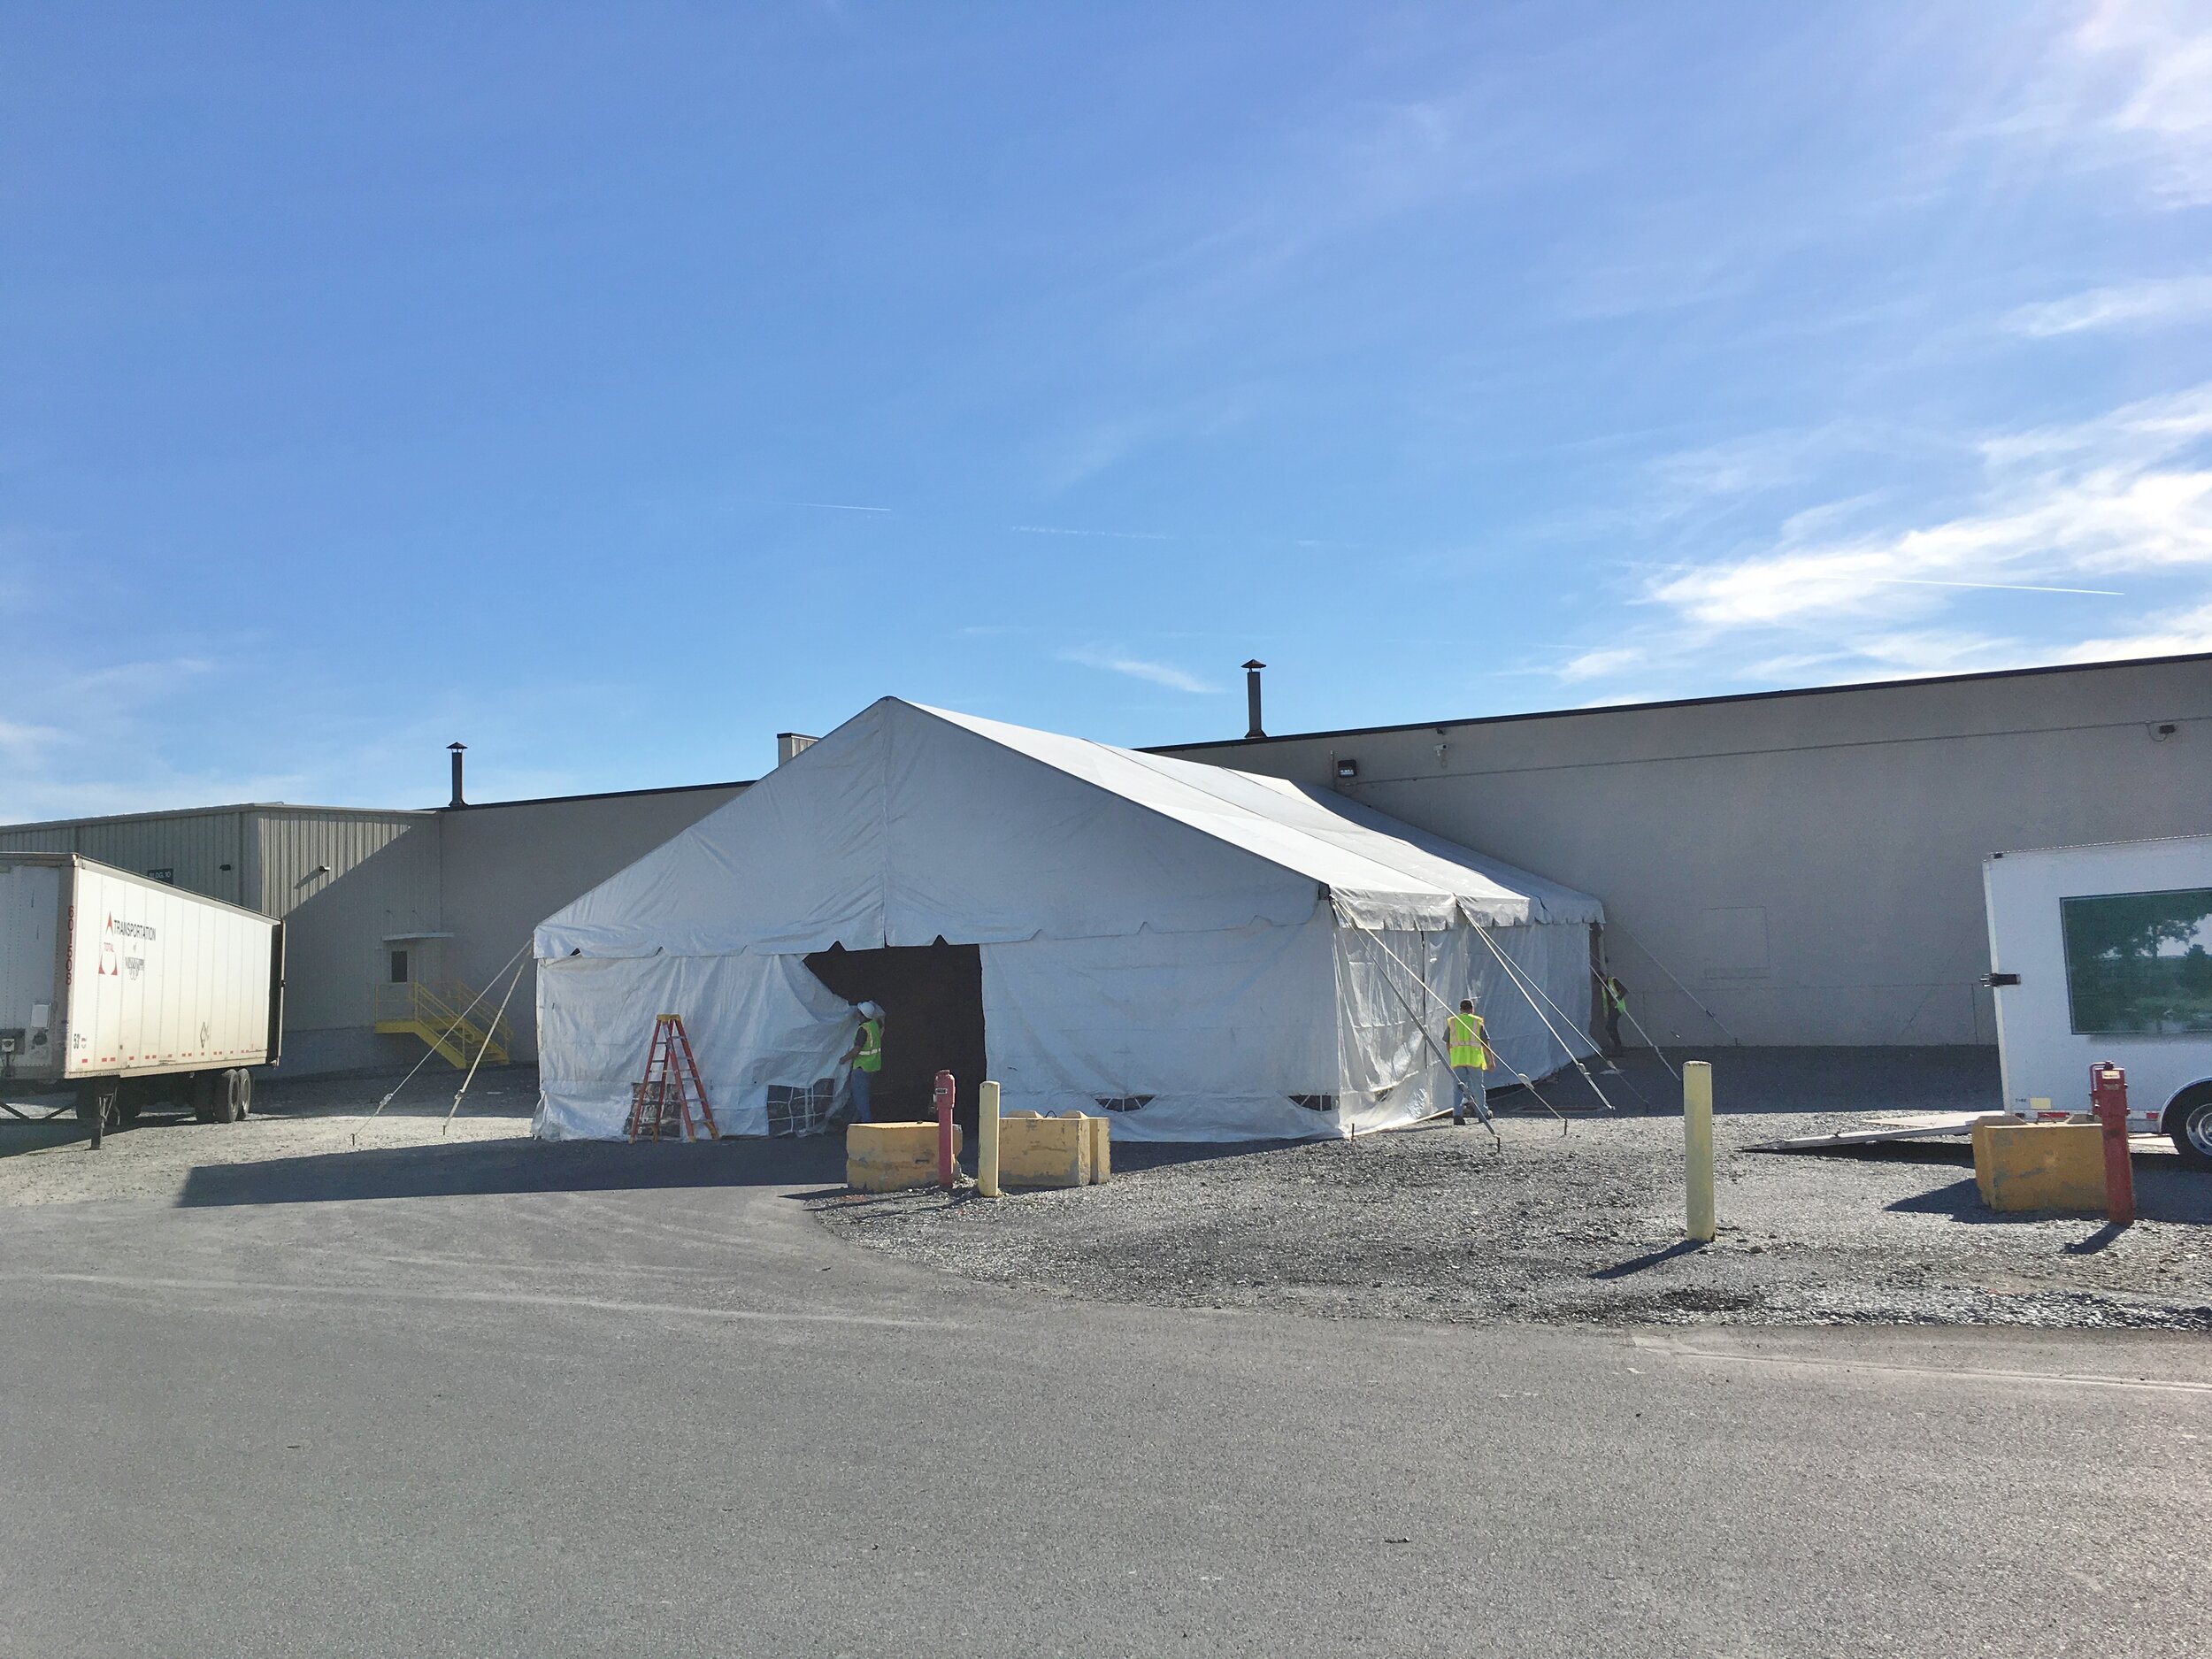 Commercial tent management service